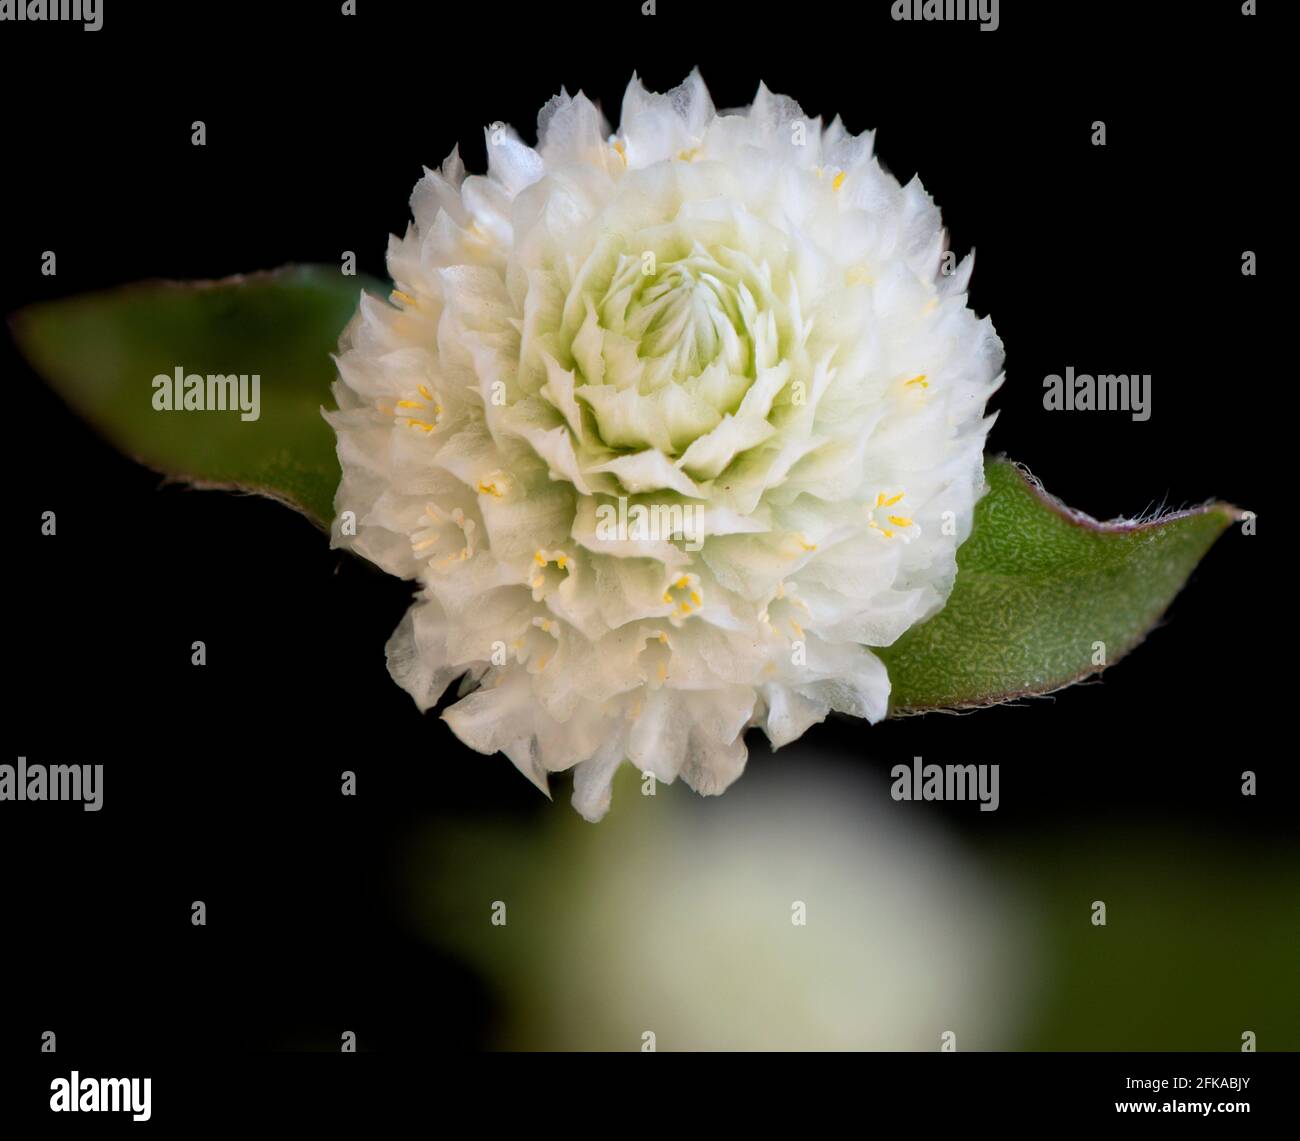 Primer plano de una sola flor blanca de Globe Amaranth en un fondo negro mediante la técnica de apilado de enfoque Foto de stock